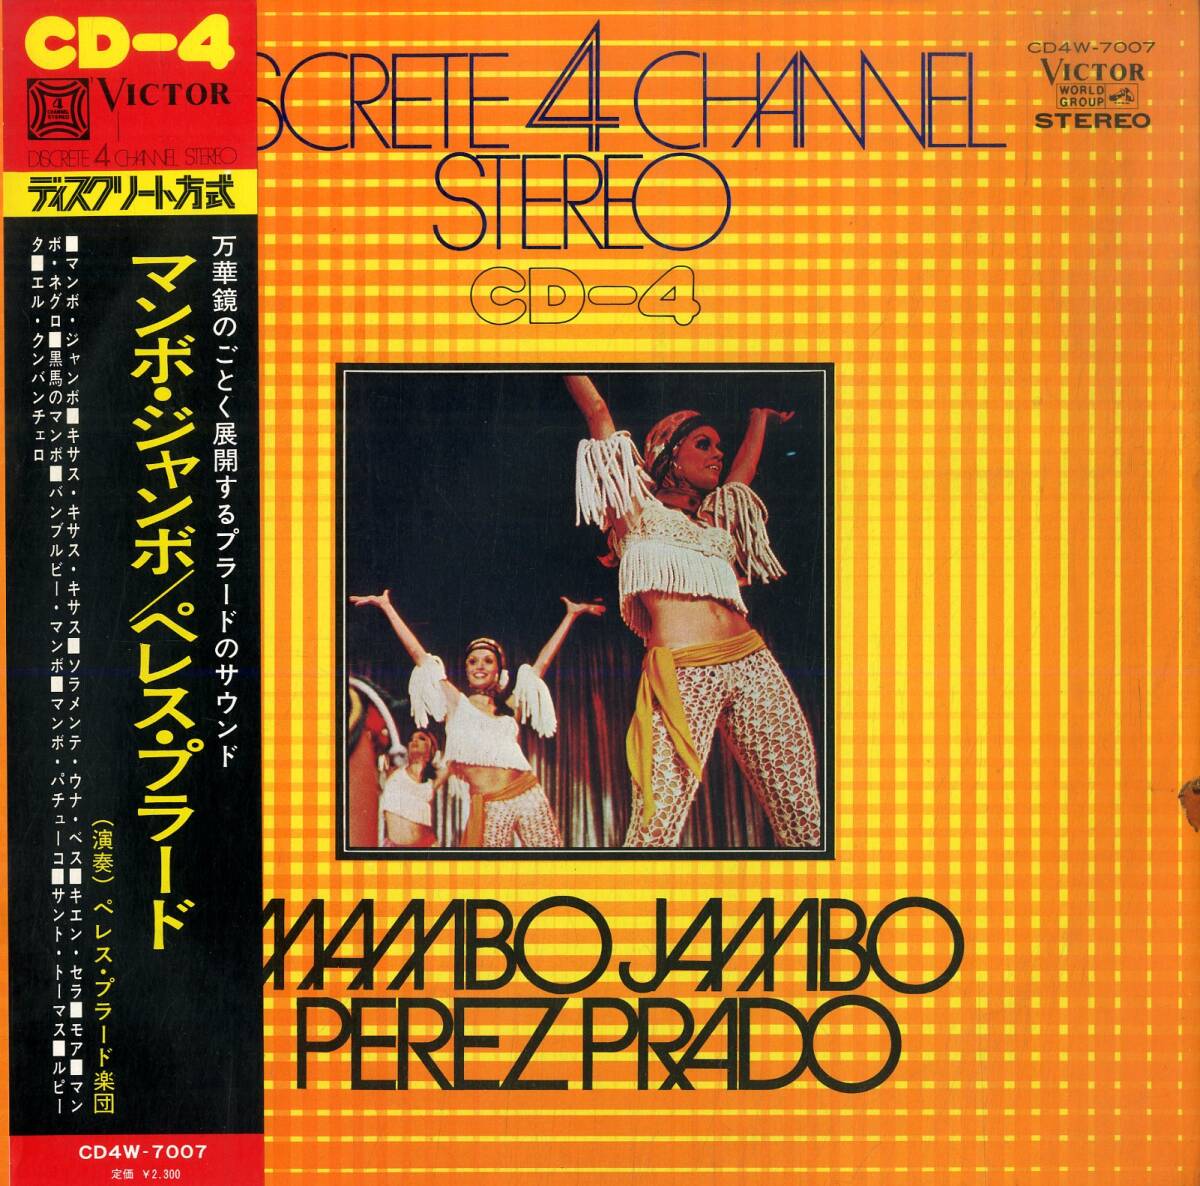 A00585392/LP/ペレス・プラード「マンボ・ジャンボ(1972年・CD4W-7007・CD-4チャンネル・マンボ・MAMBO)」の画像1